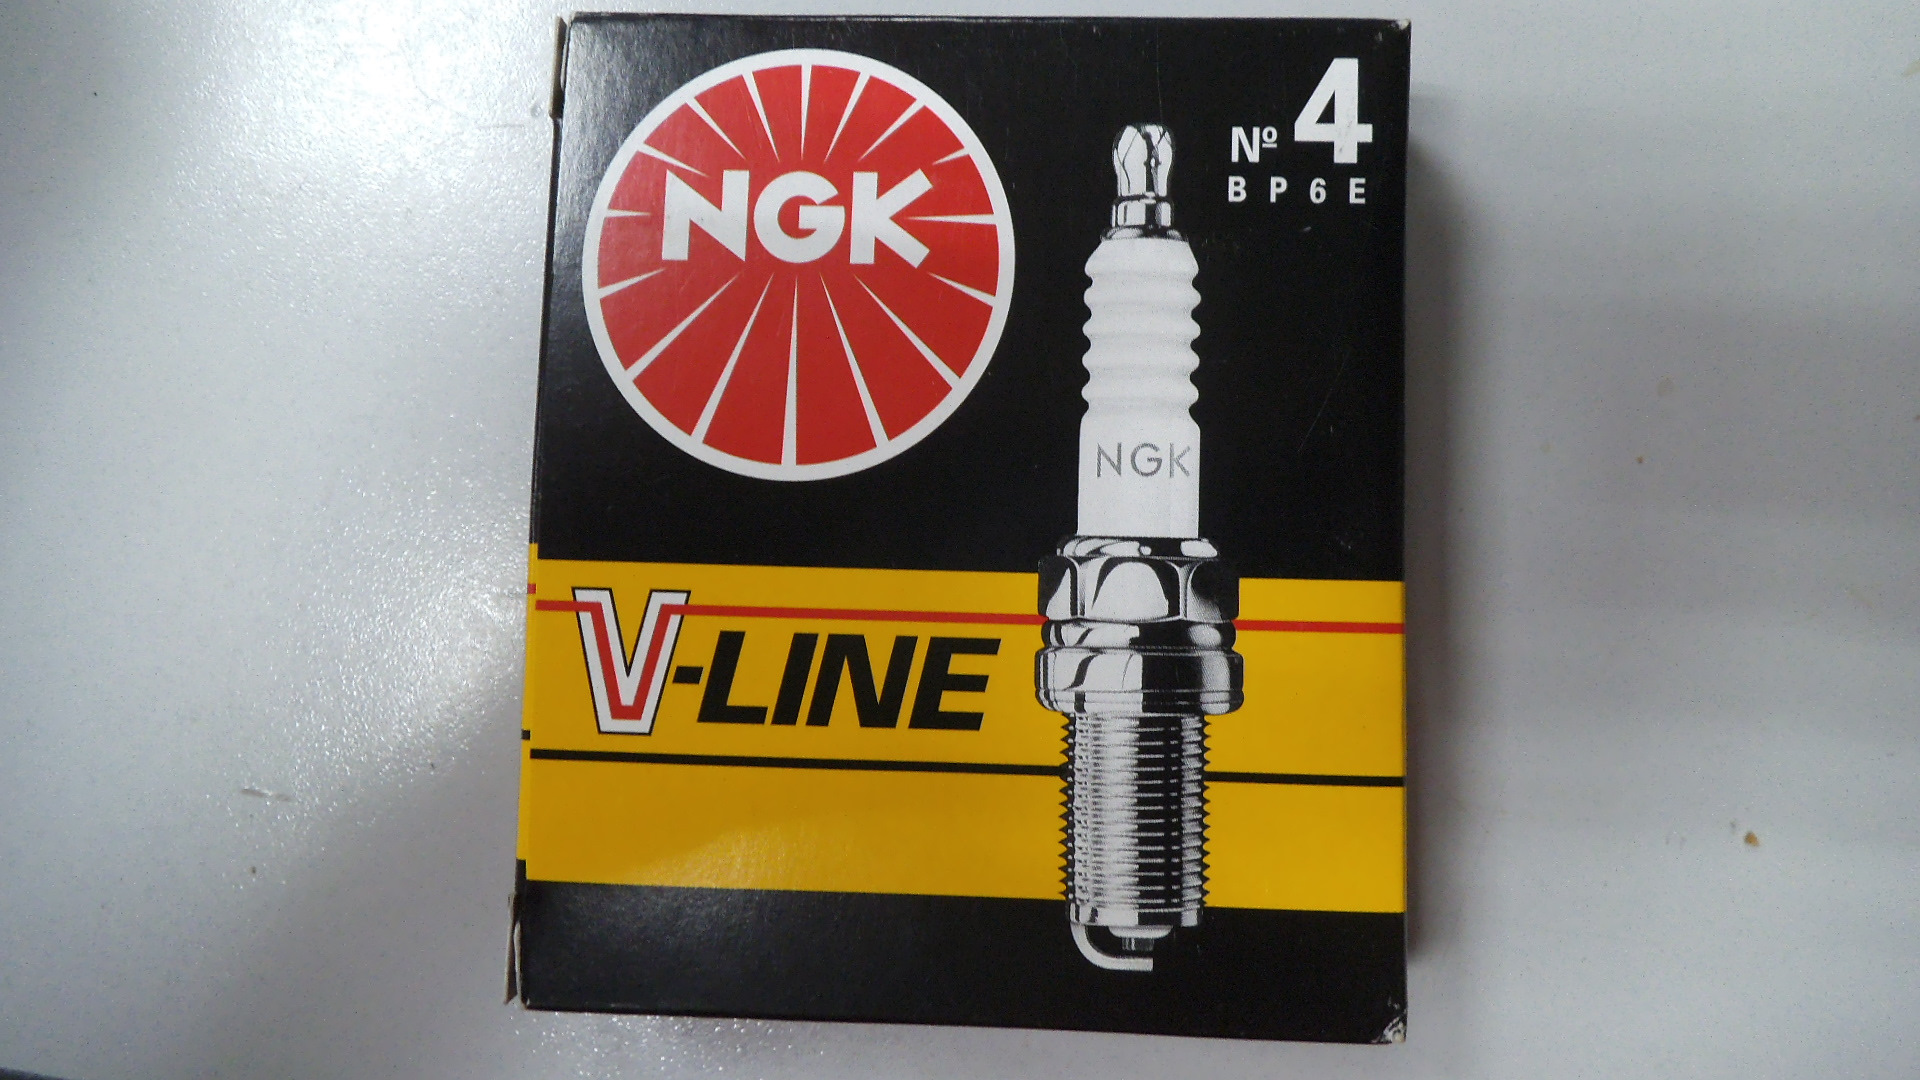 Свечи ngk line. NGK V-line 4. NGK №4 bp6e. NGK bp6e v-line 4. Свечи 2526 NGK V line.